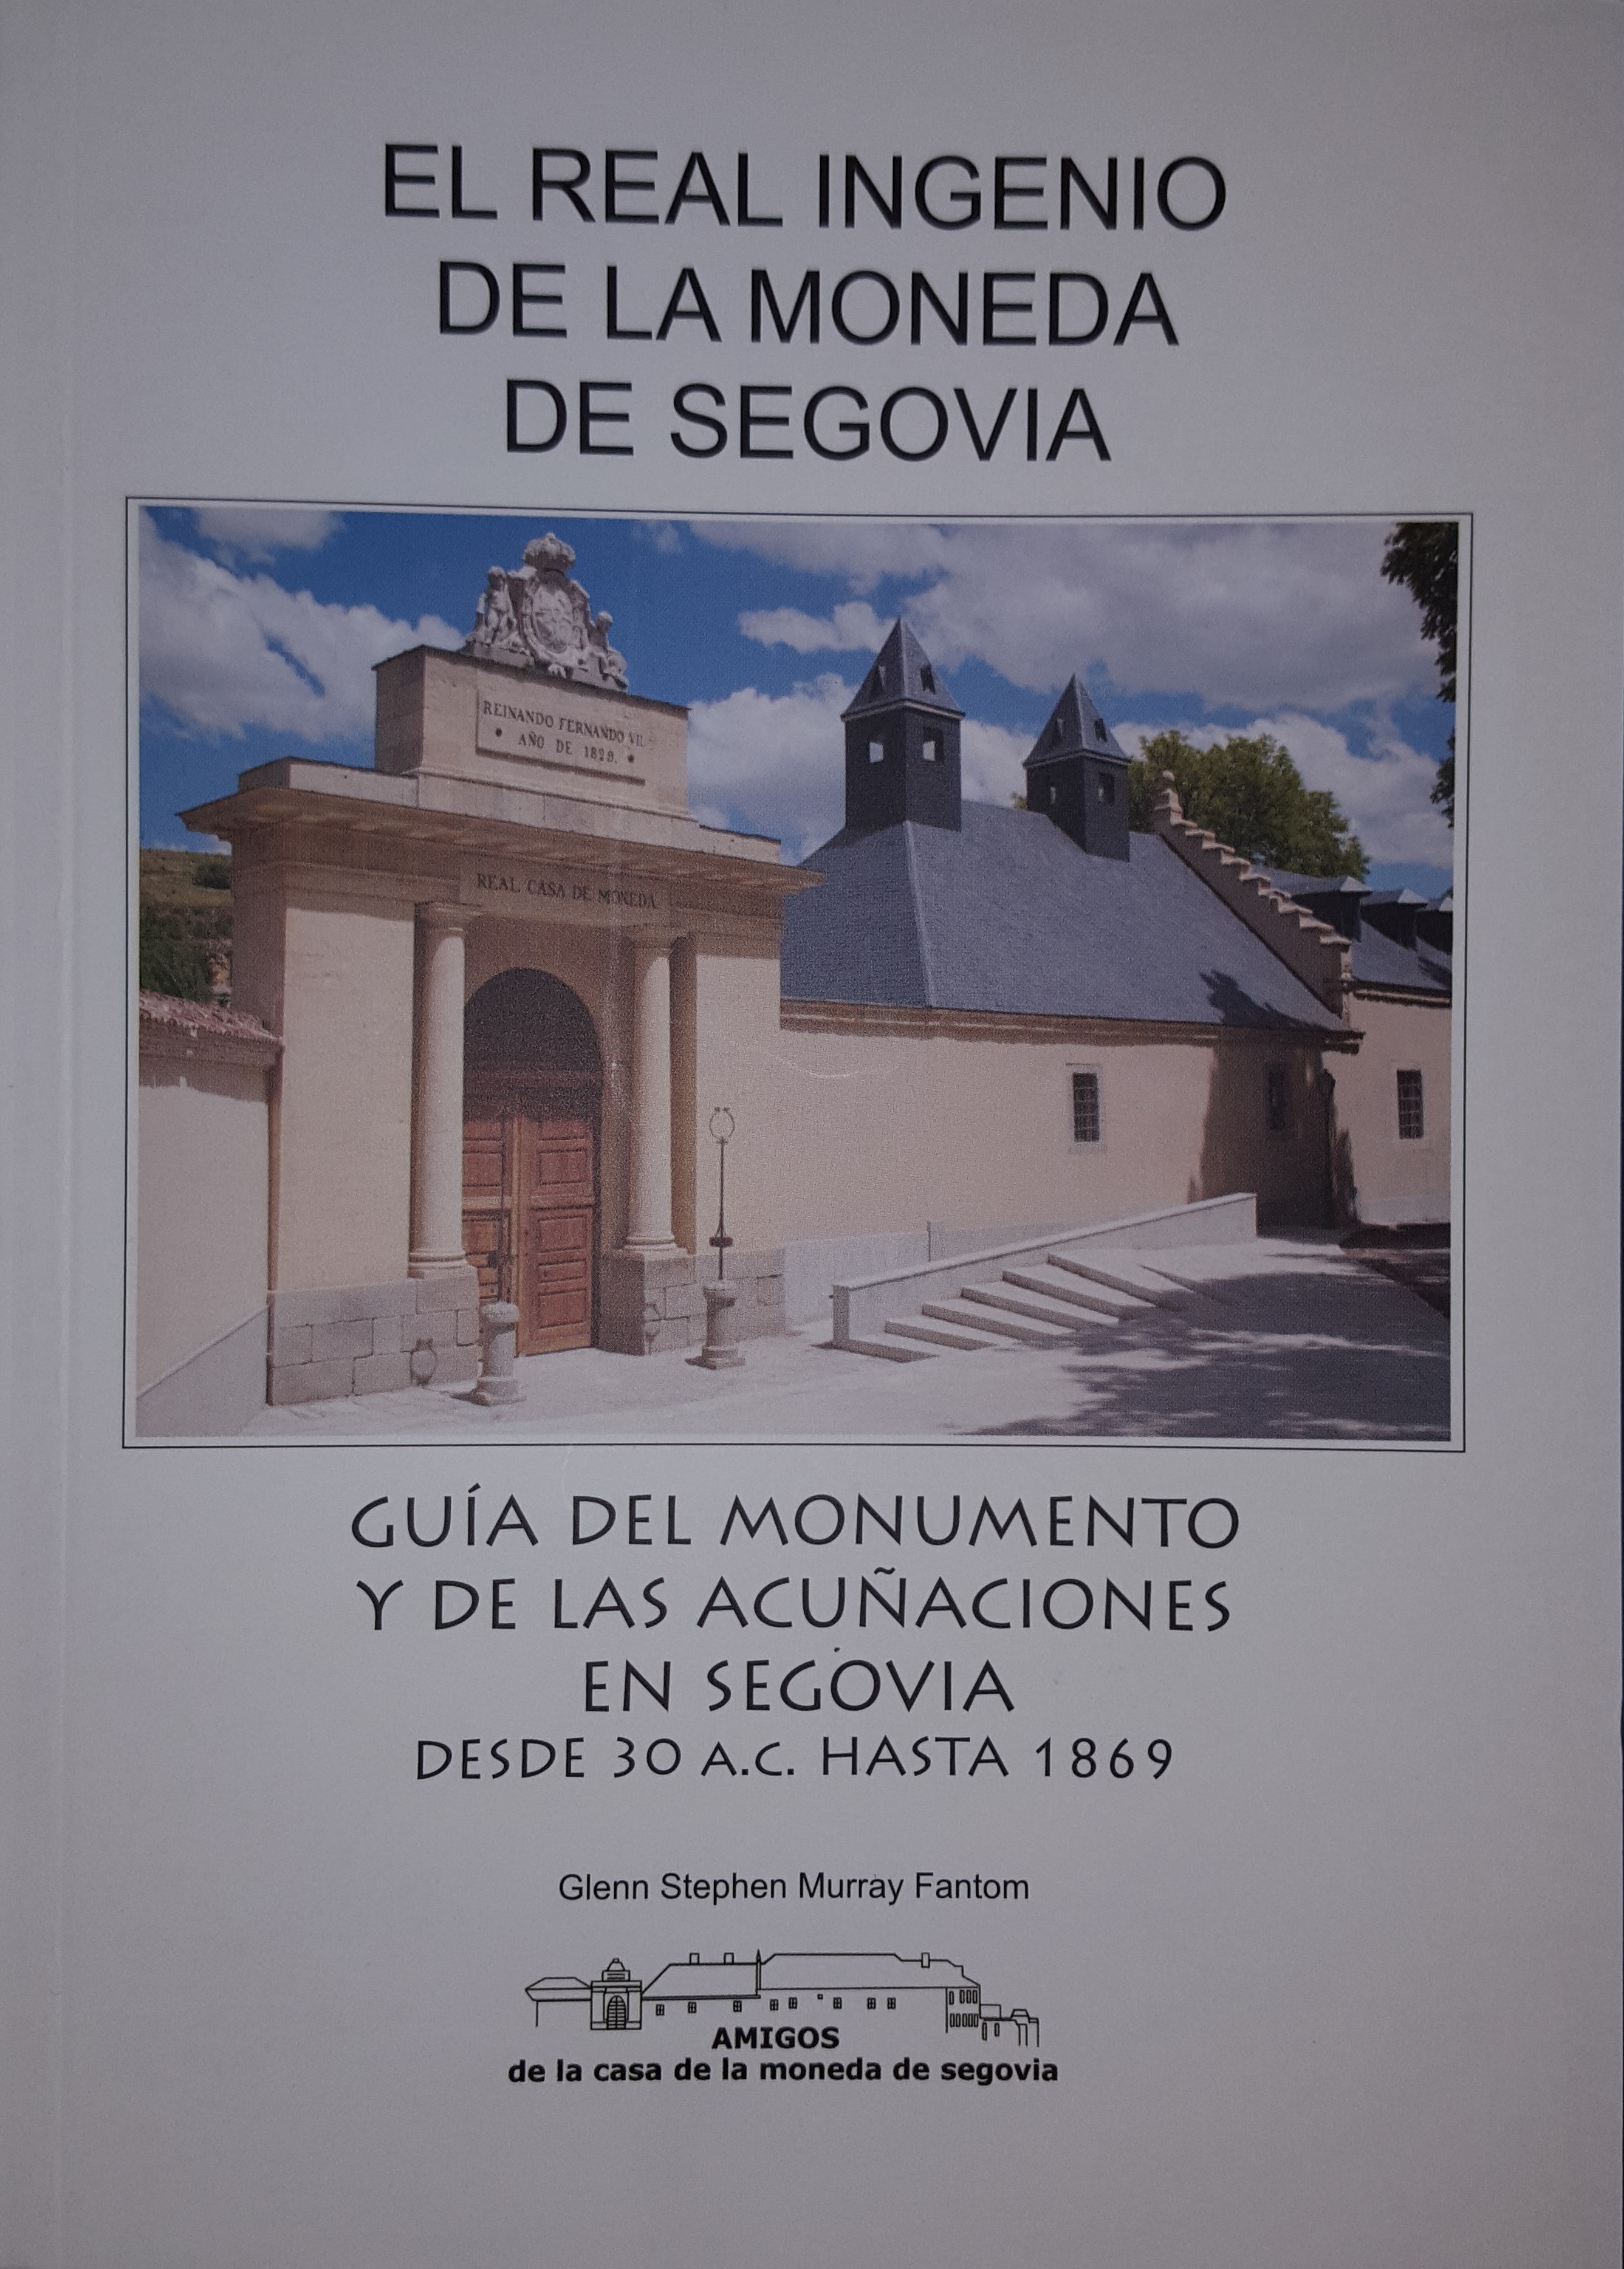 El Real Ingenio de la Moneda de Segovia. Guía del monumento y de las acuñaciones en Segovia. Desde 30 A.C. Hasta 1869